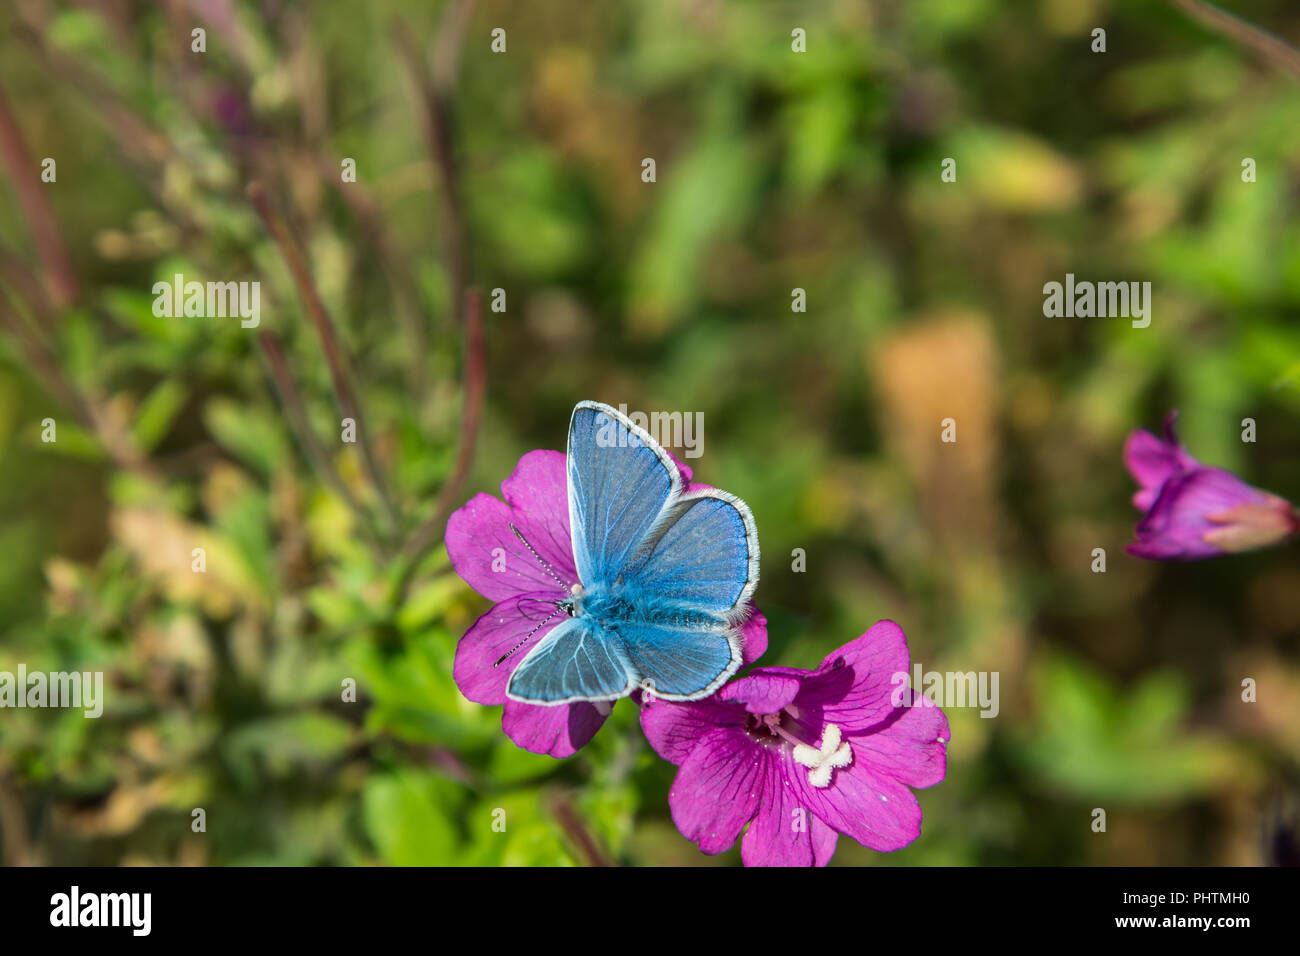 Le papillon bleu s'est posé sur l'un de fleurs rose vif Rosebay Willowherb dans une prairie d'été août dans le Lancashire, Angleterre, Royaume-Uni. Banque D'Images